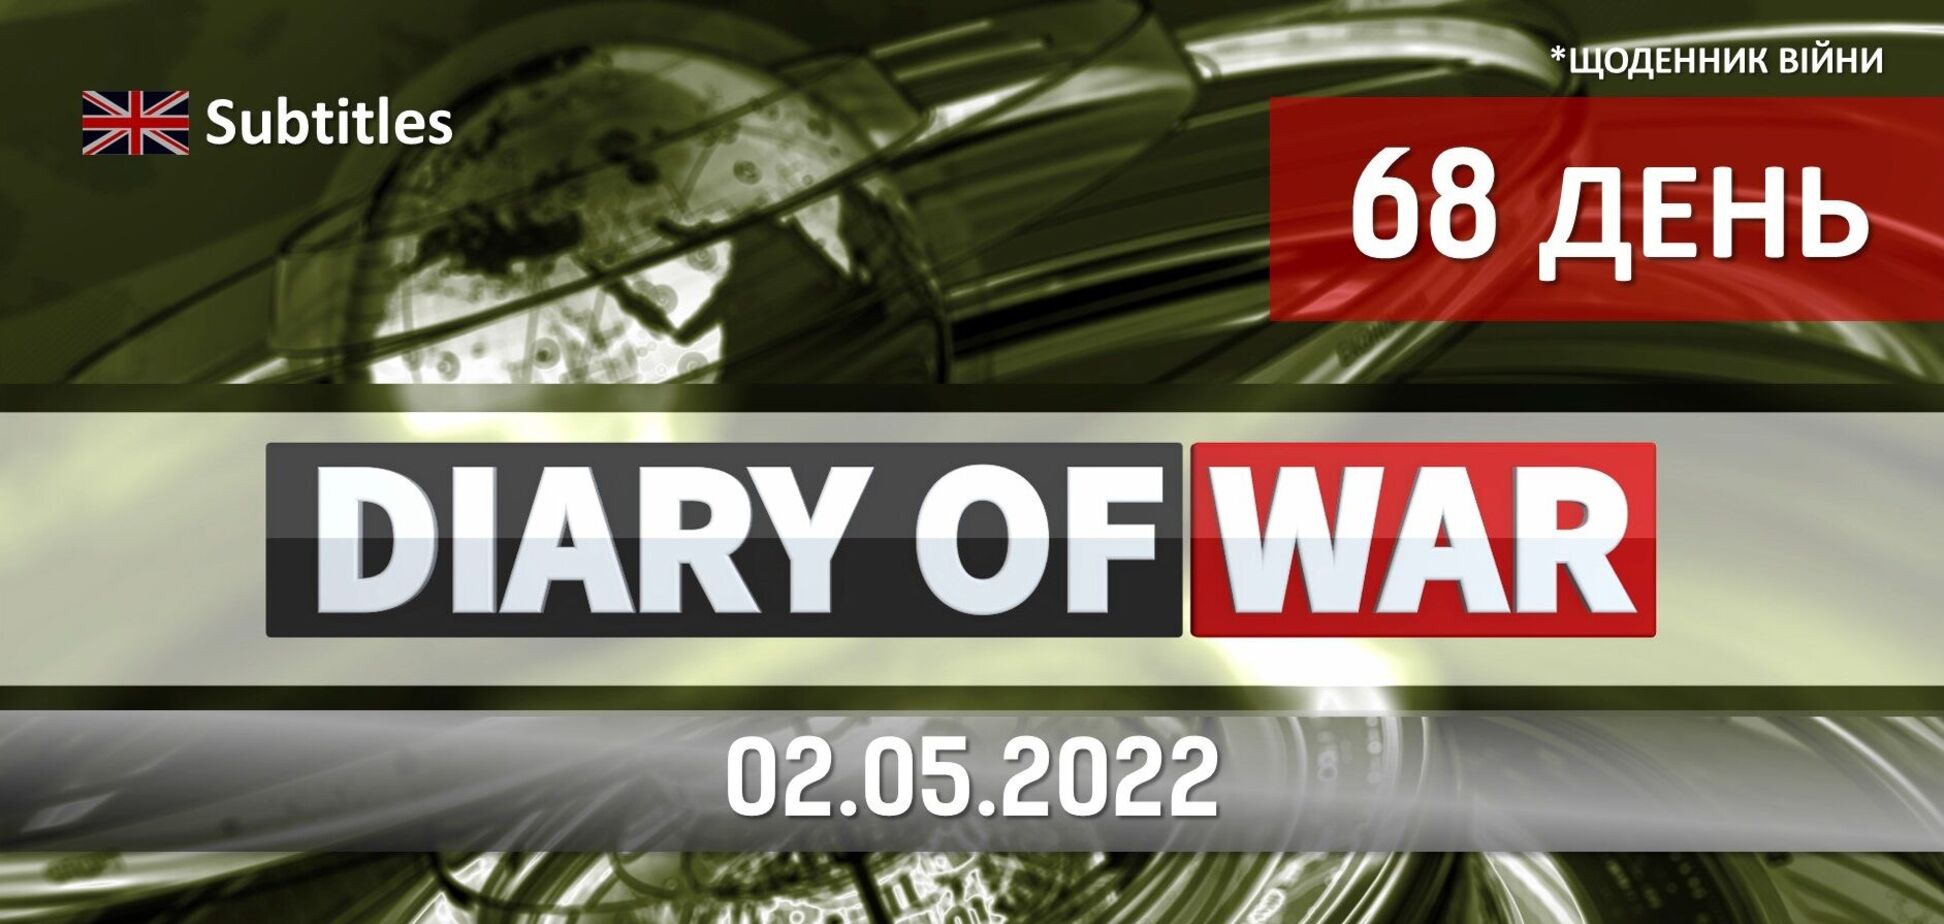 Врятовані маріупольці, знищені Раптори, нафтовому ембарго – бути, теми щоденника війни від редакції новин Obozrevatel TV